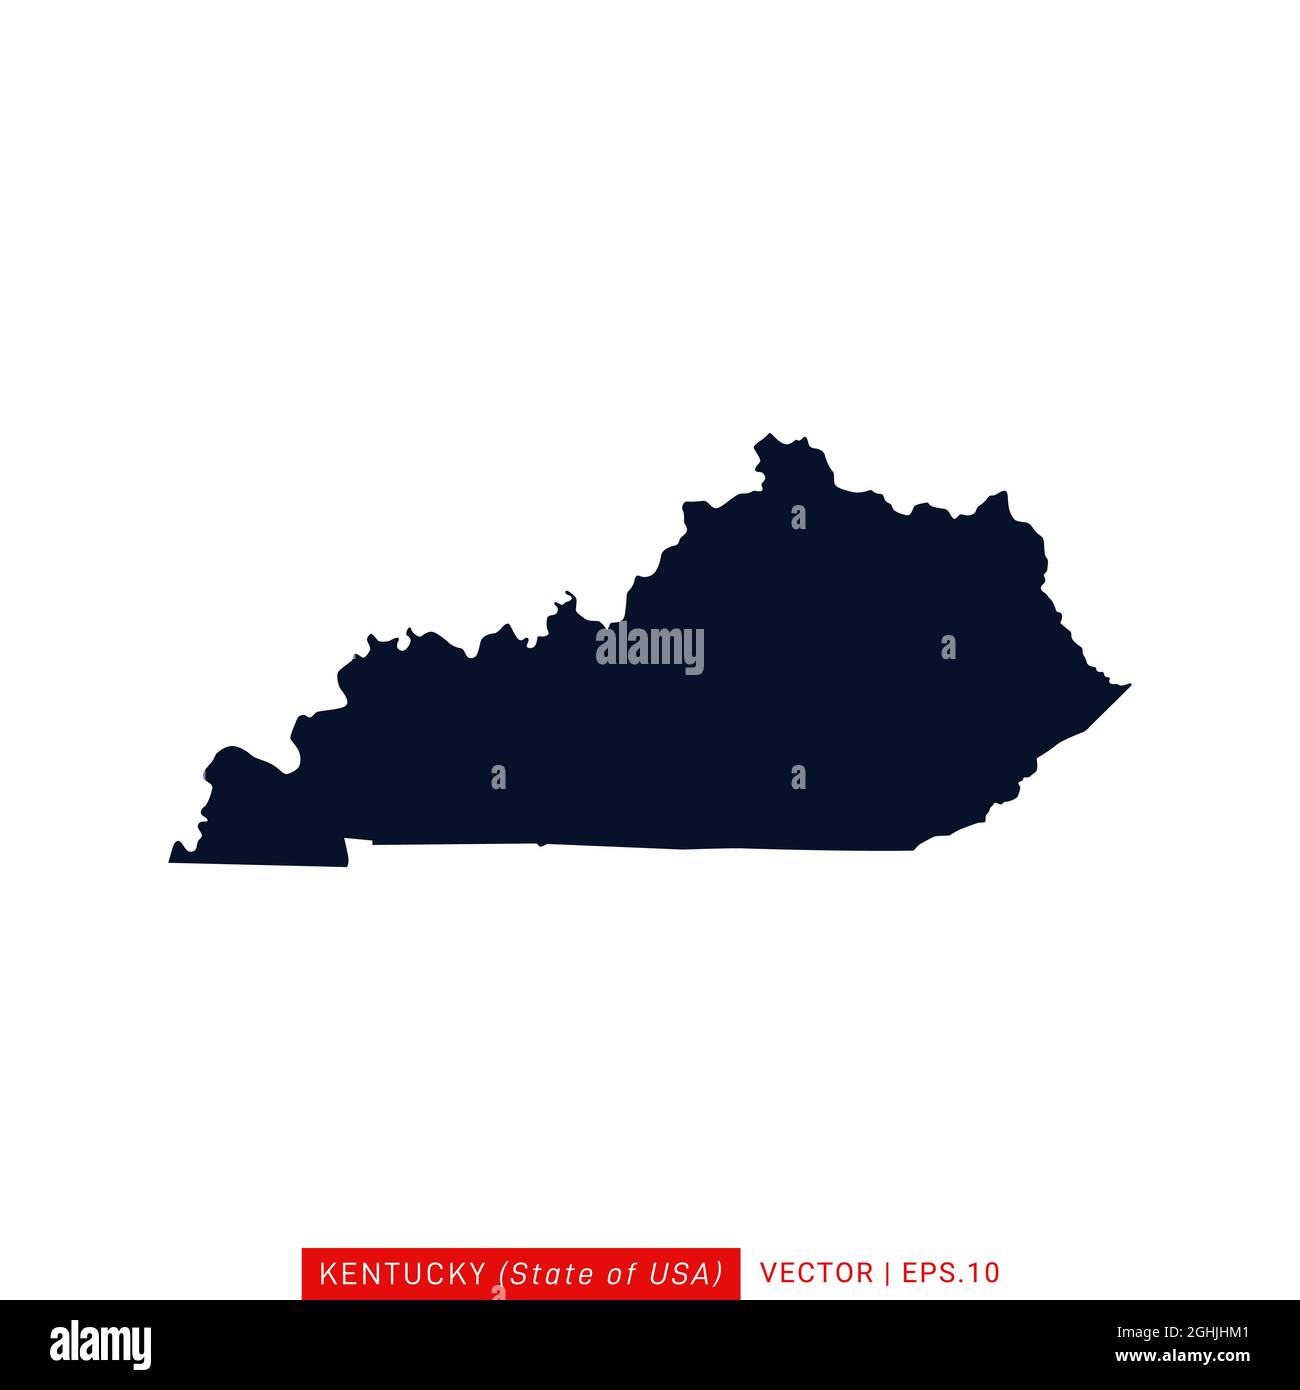 Modello di disegno di illustrazione di stock vettoriale del Kentucky (USA). Vettore eps 10. Illustrazione Vettoriale